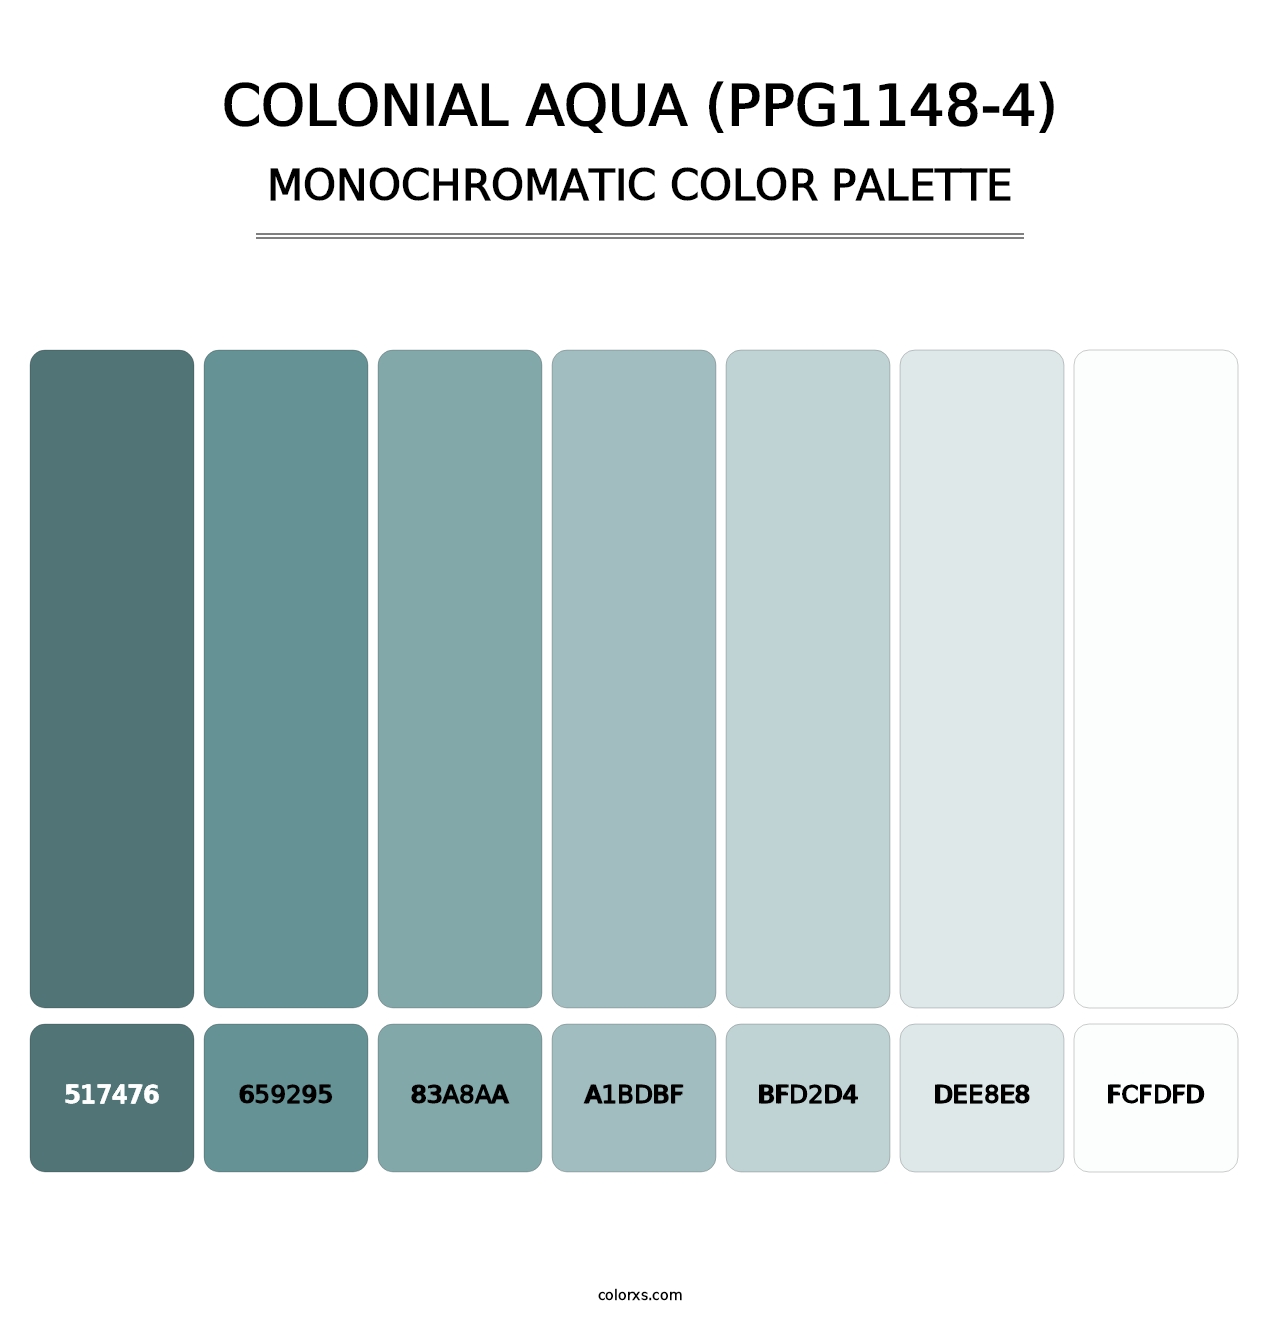 Colonial Aqua (PPG1148-4) - Monochromatic Color Palette